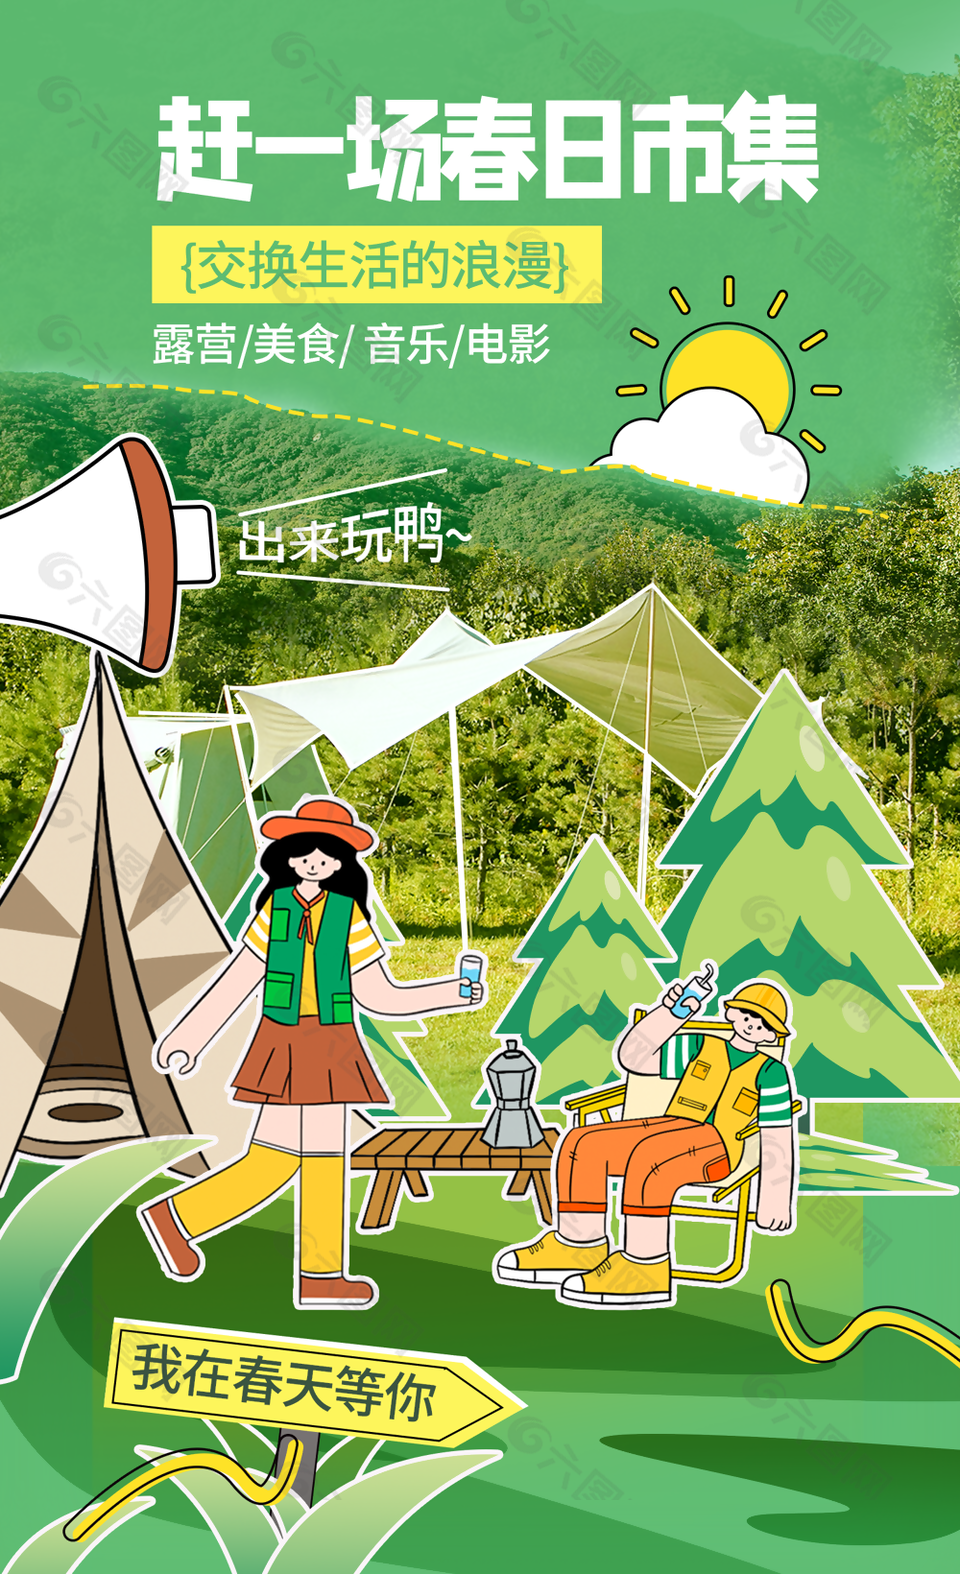 綠色風景春季踏青露營海報設計